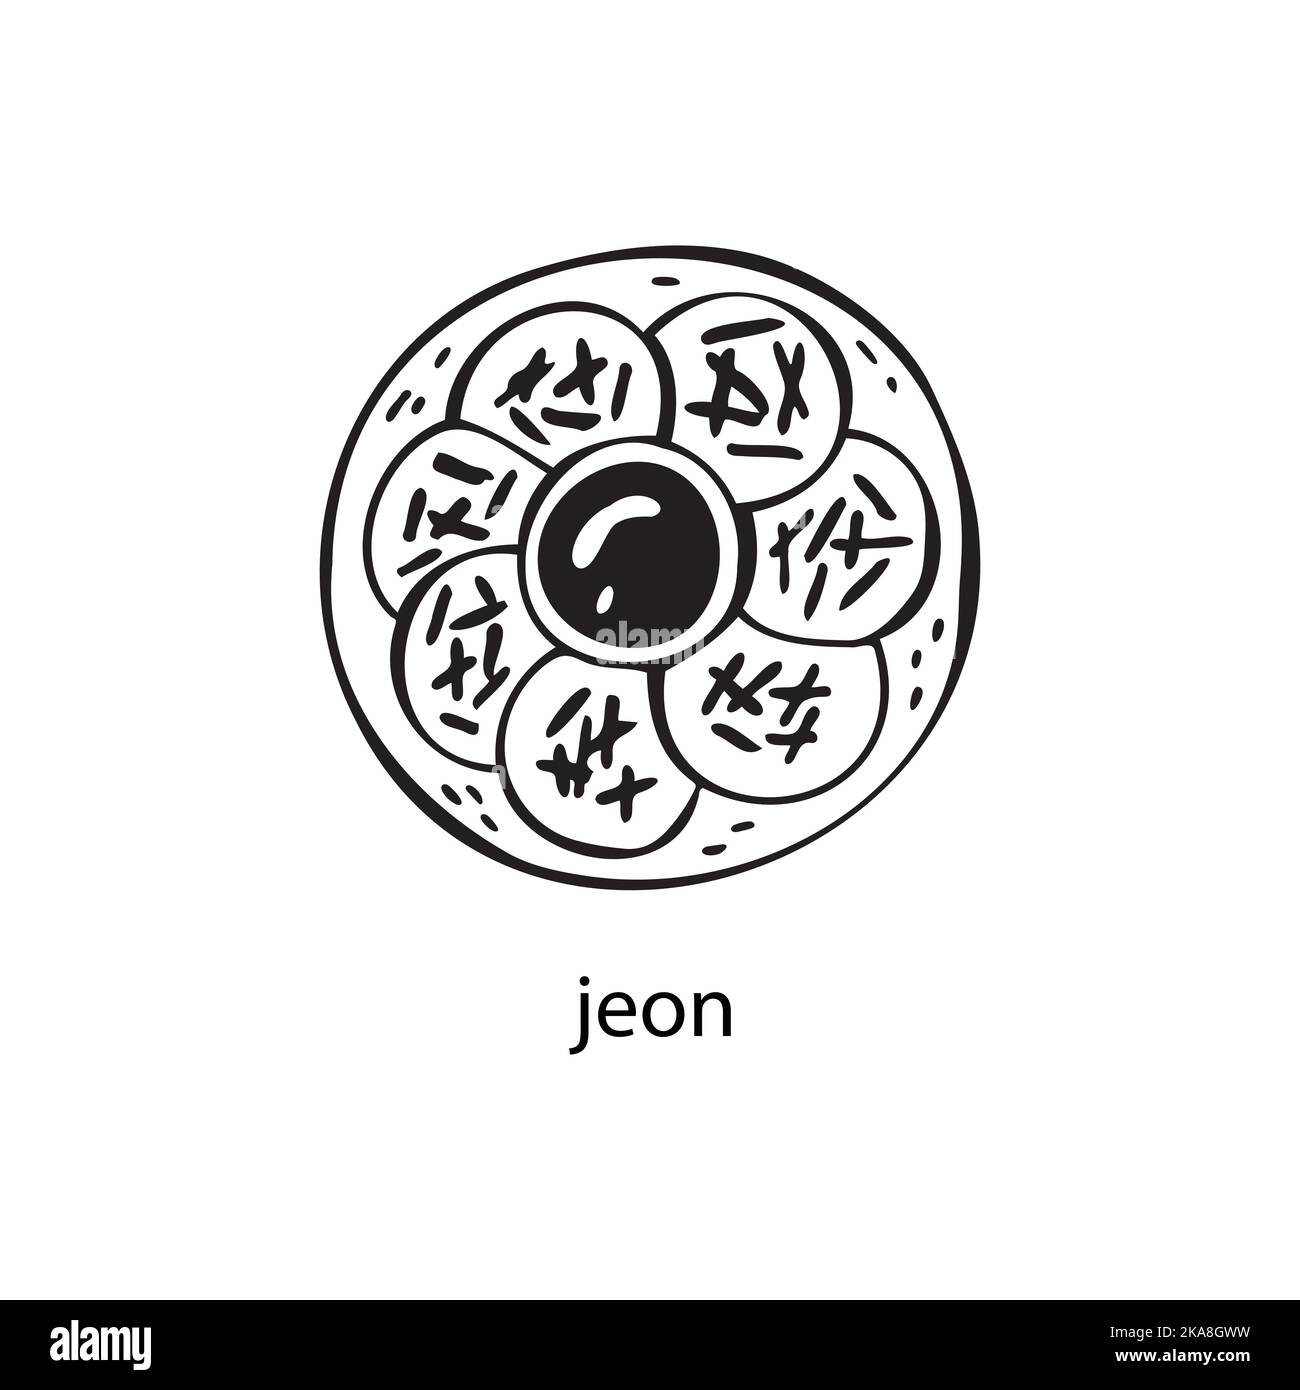 Illustration vectorielle d'un plat sud-coréen - jeon. Plats pour Noël et le nouvel an. Illustration de Vecteur